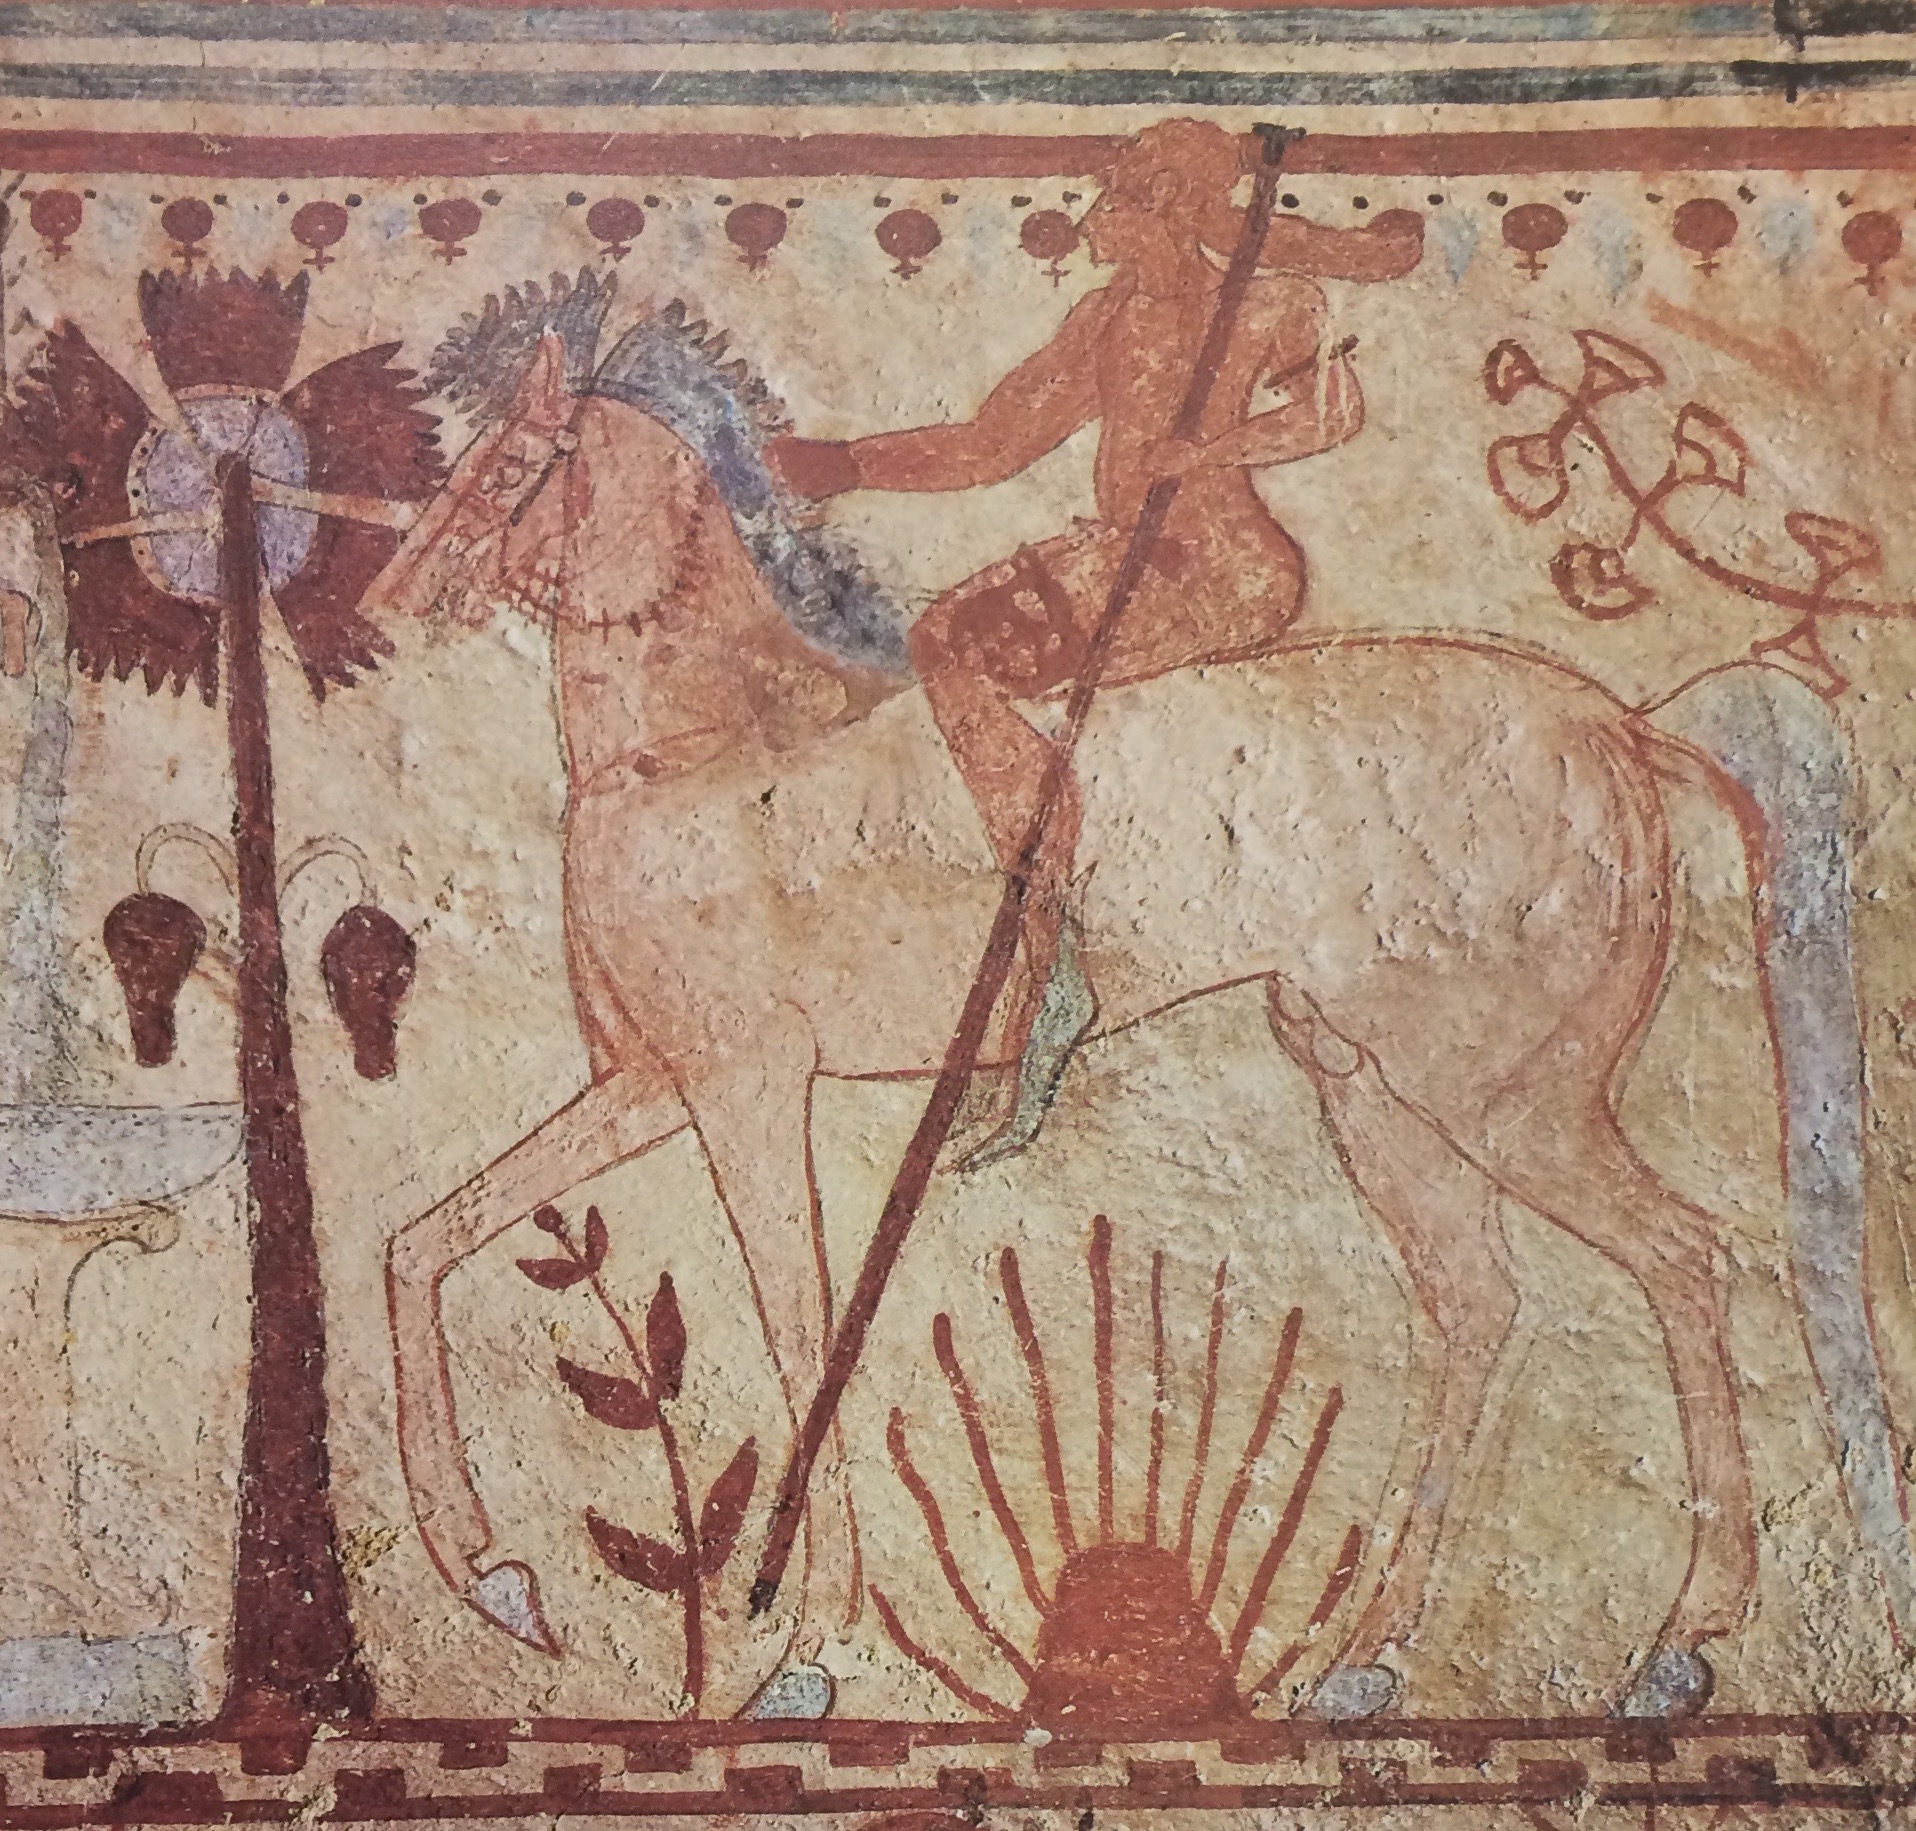 TOMBA DEI TORI - Secondi Archi (tomba a camera ipogea, area ad uso funerario) - Tarquinia (VT)  (seconda metà VI a.C)